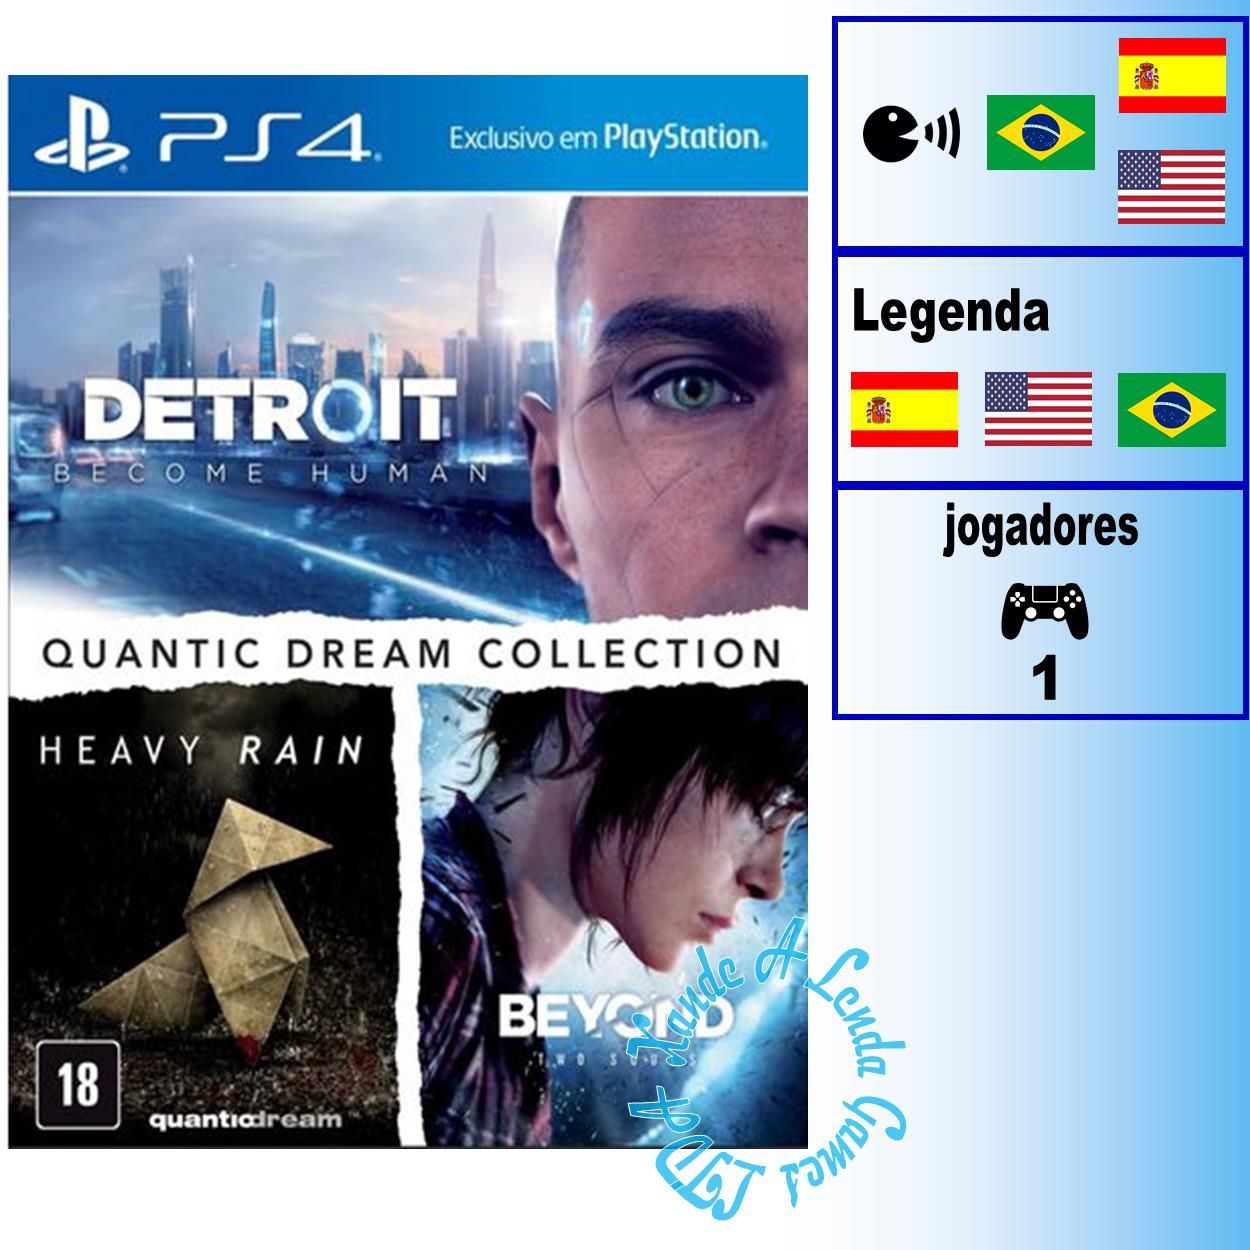 Jogo de PS4 Dreams (MÍDIA FÍSICA)